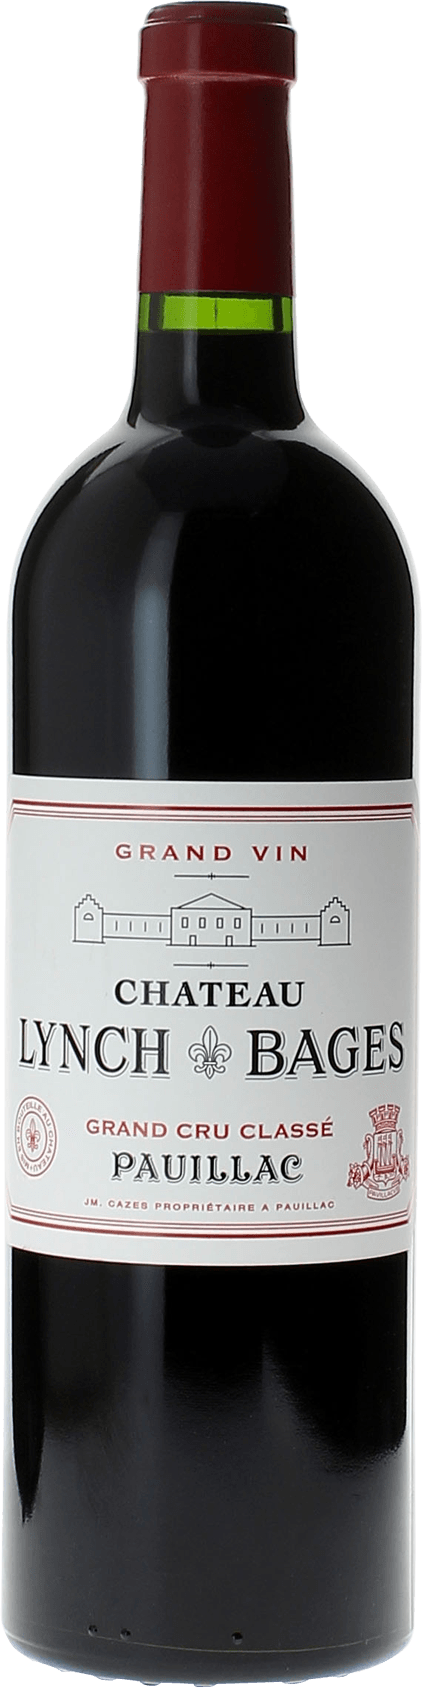 Lynch bages 2010 5 me Grand cru class Pauillac, Bordeaux rouge